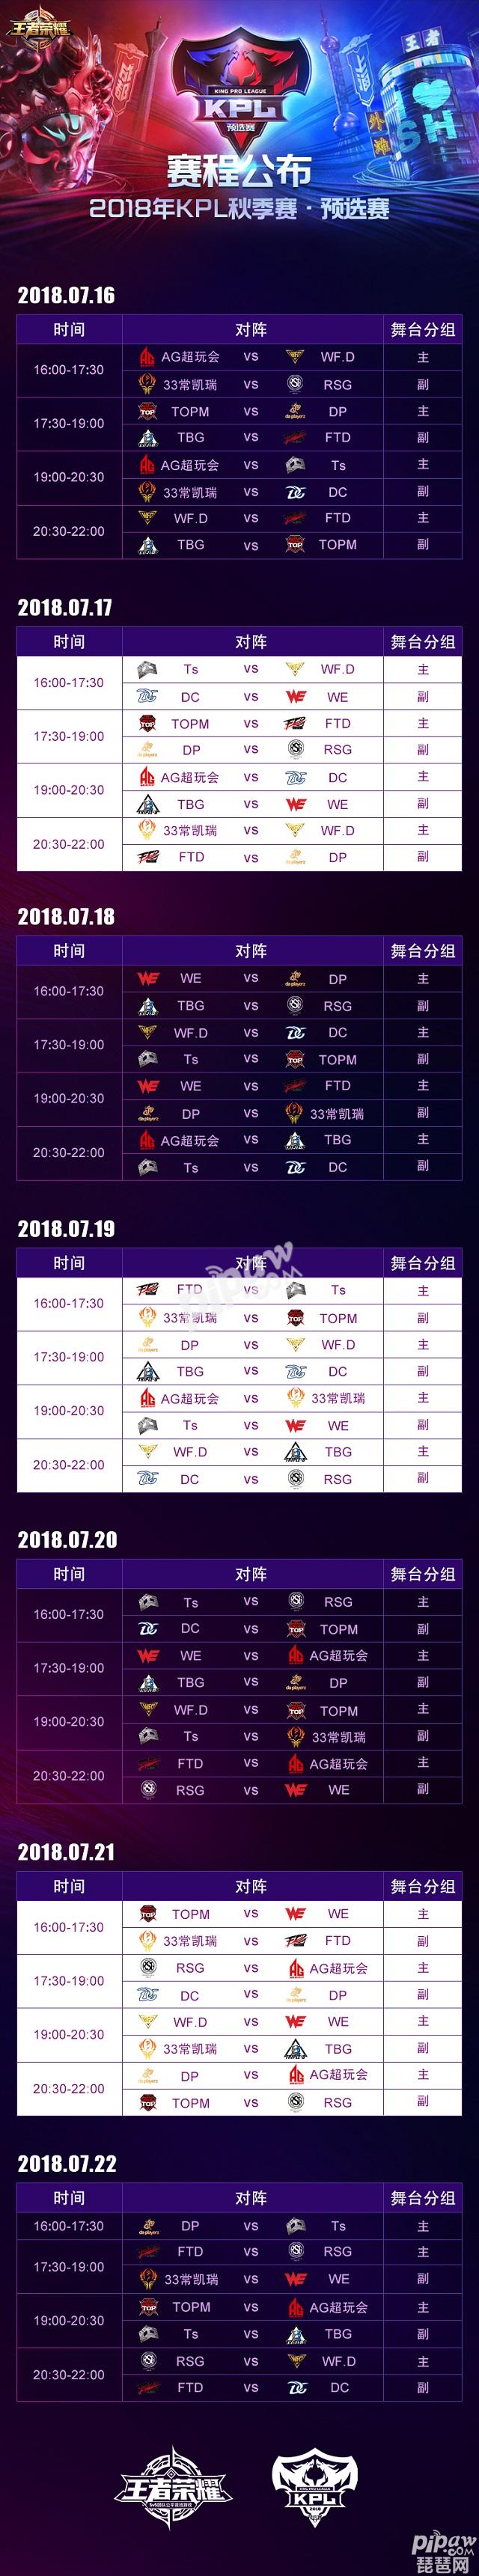 王者荣耀2018kpl秋季赛预选赛赛程时间表 只有两个晋级名额